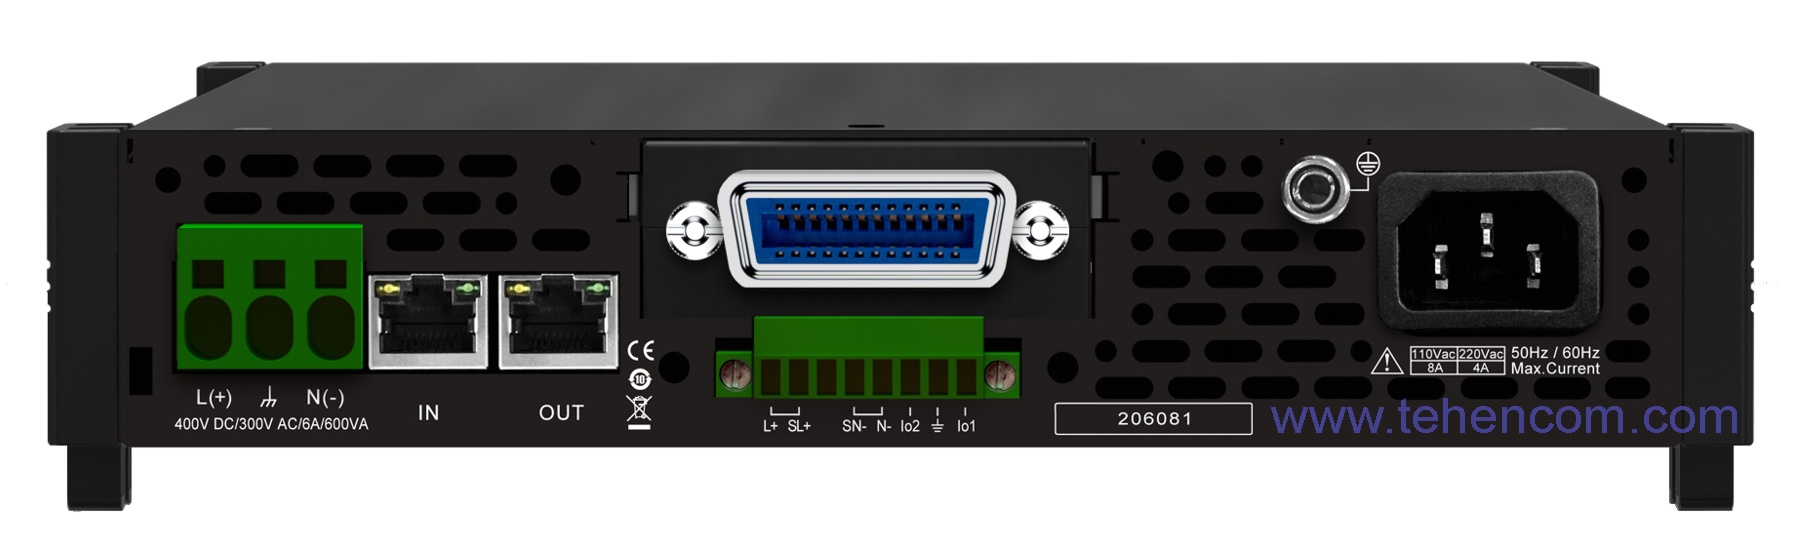 Задняя панель источника переменного тока IT-M7722 с установленным модулем IT-E1205 (GPIB)